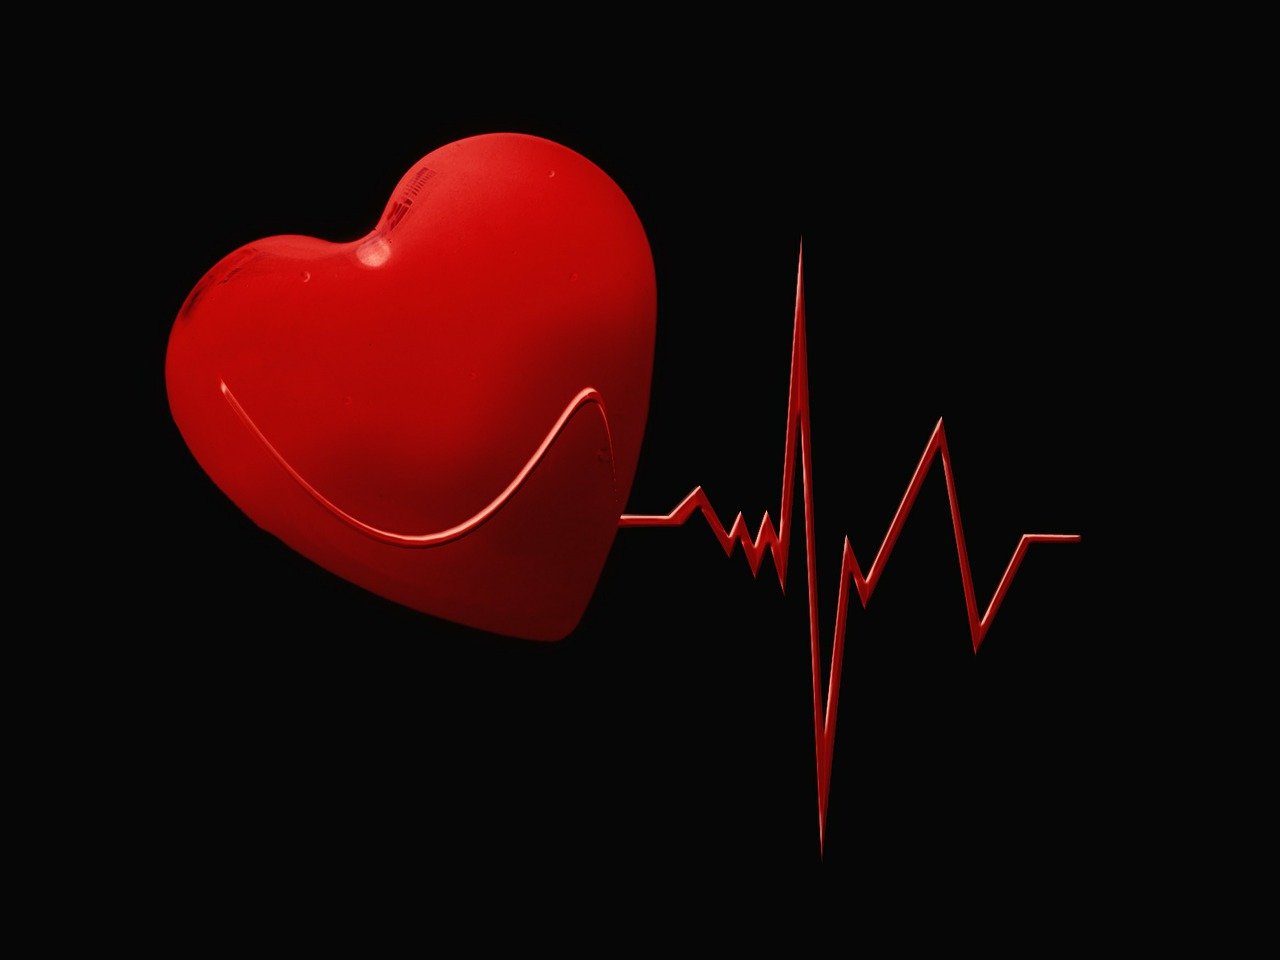 a red heart on a black background with an ecg line, a picture, hurufiyya, image, wonderful, ivory, aaaaaaaaaaaaaaaaaaaaaa